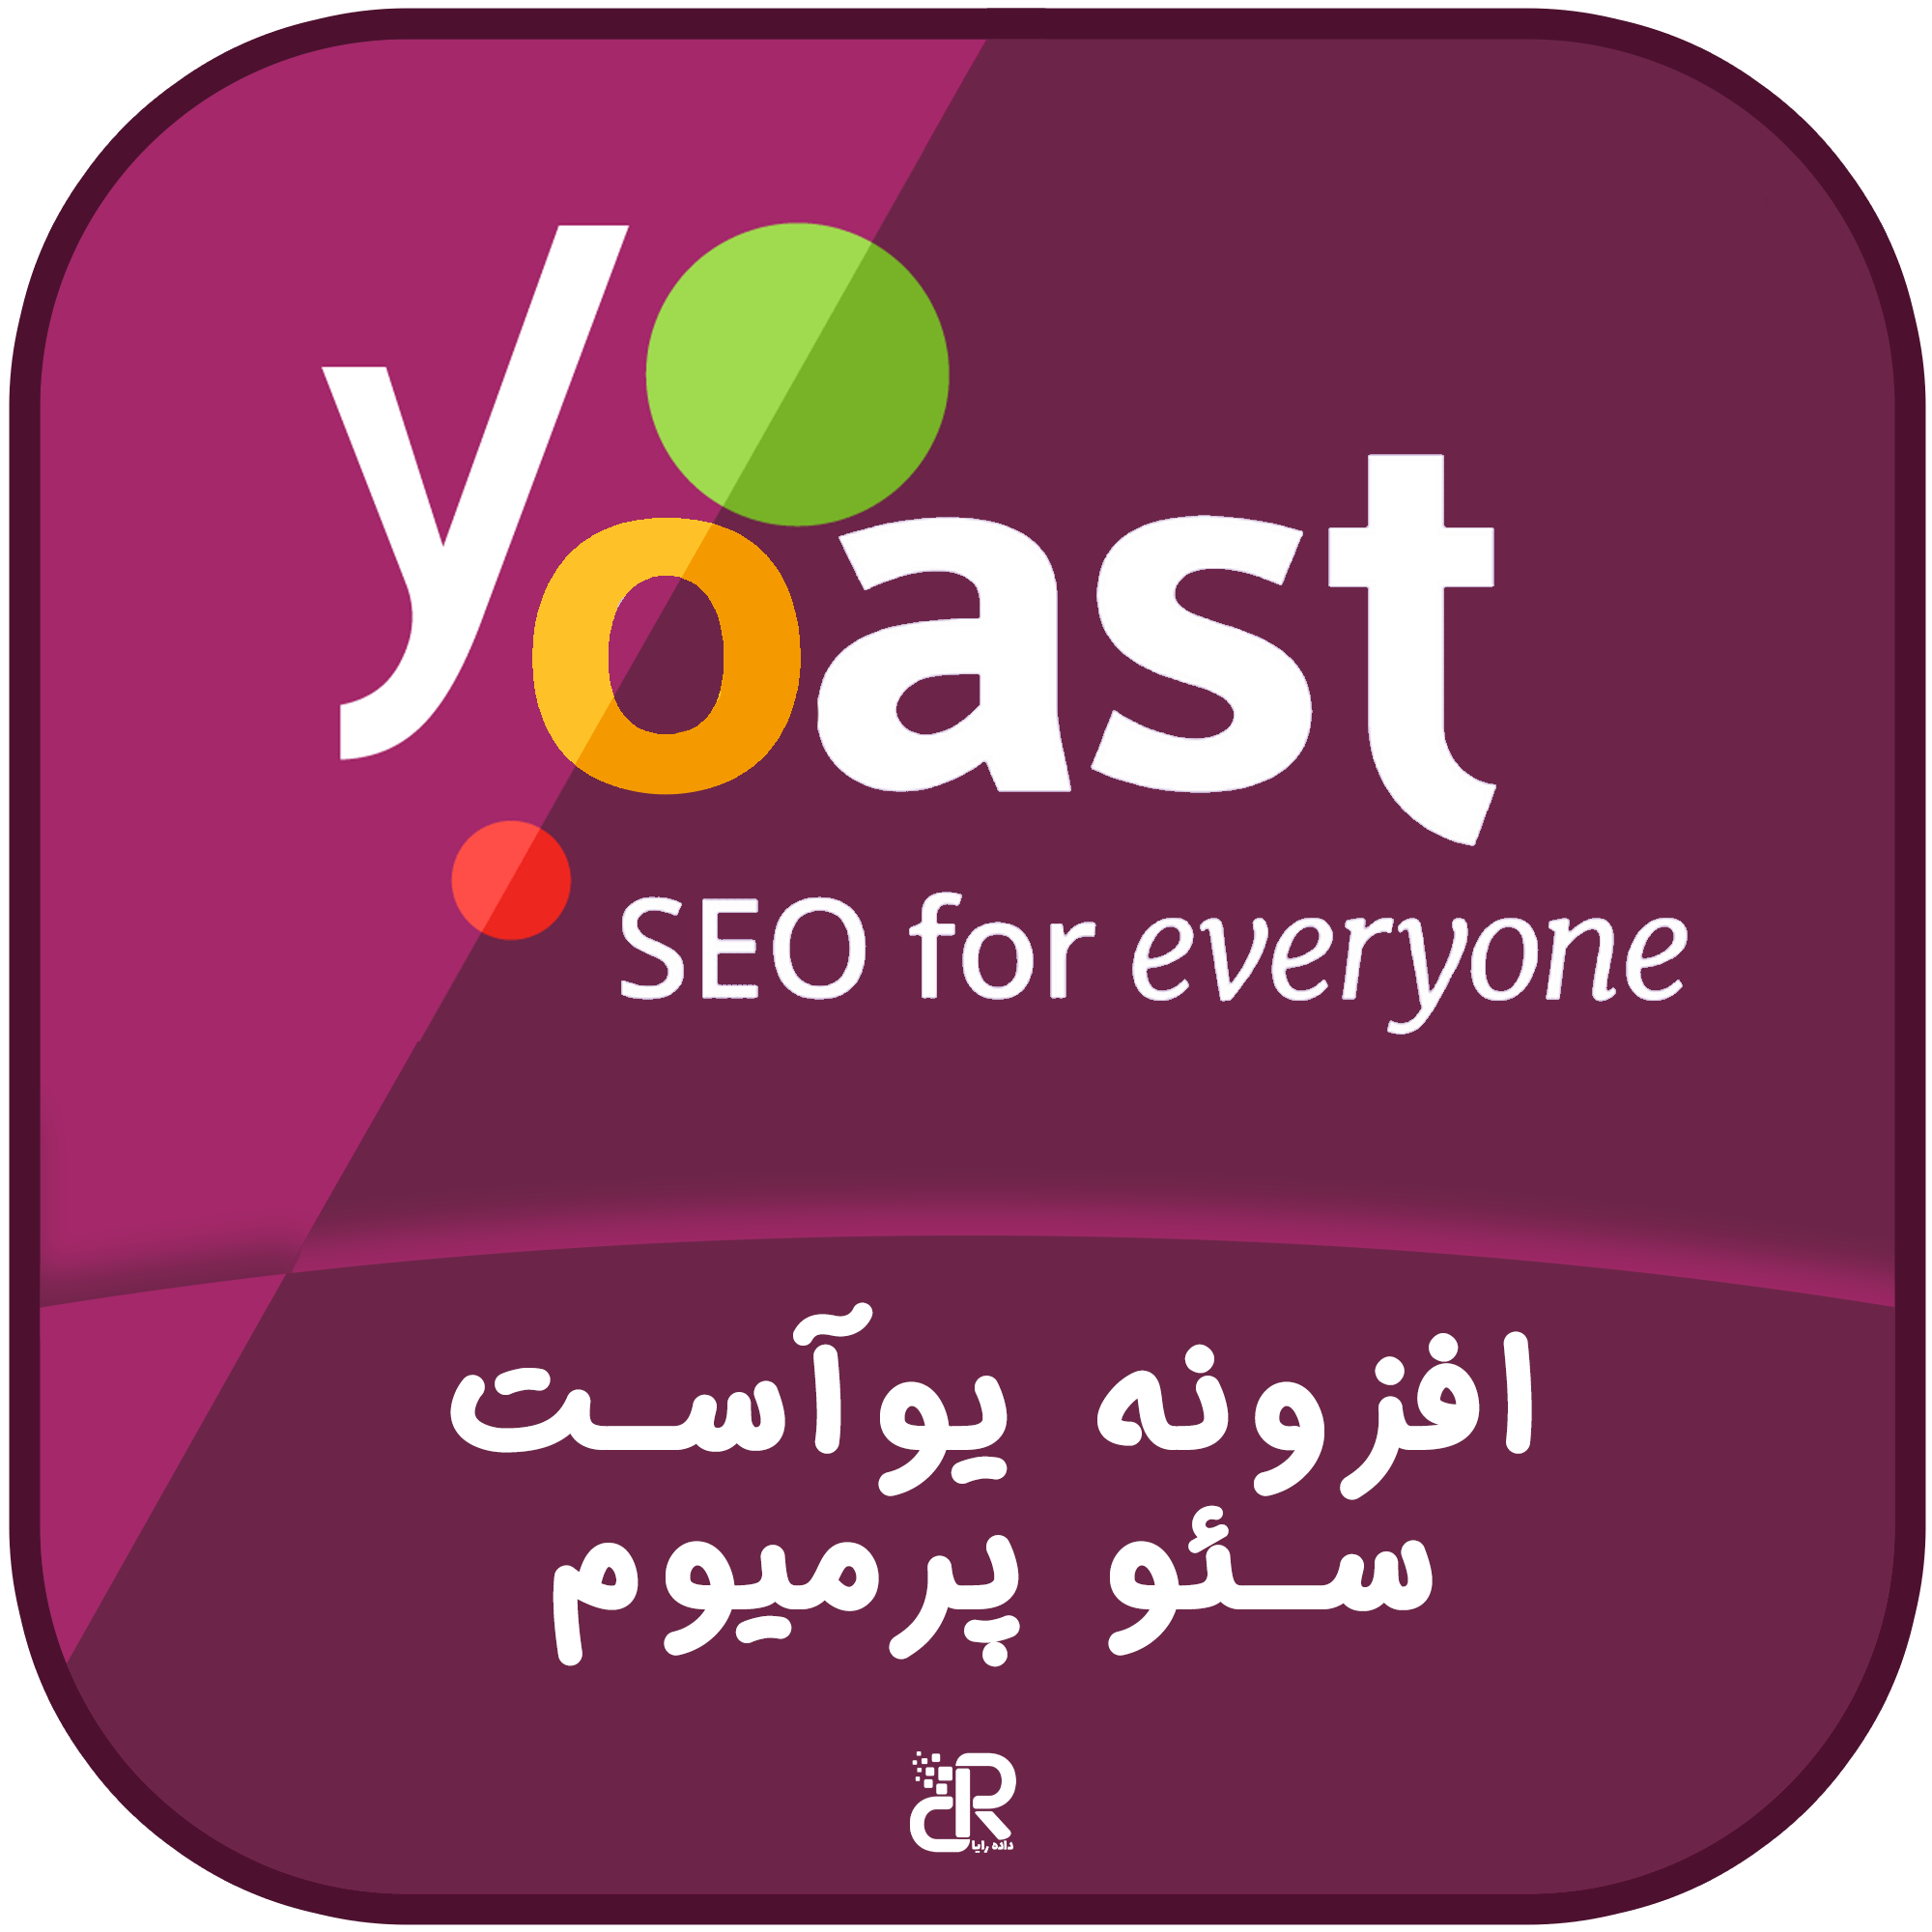 افزونه یوآست سئو پرمیوم,افزونه yoast seo,خرید yoast seo premium,افزونه یواست,افزونه Yoast SEO Premium 19.6 دیجیراتی,افزونه سئو وردپرس